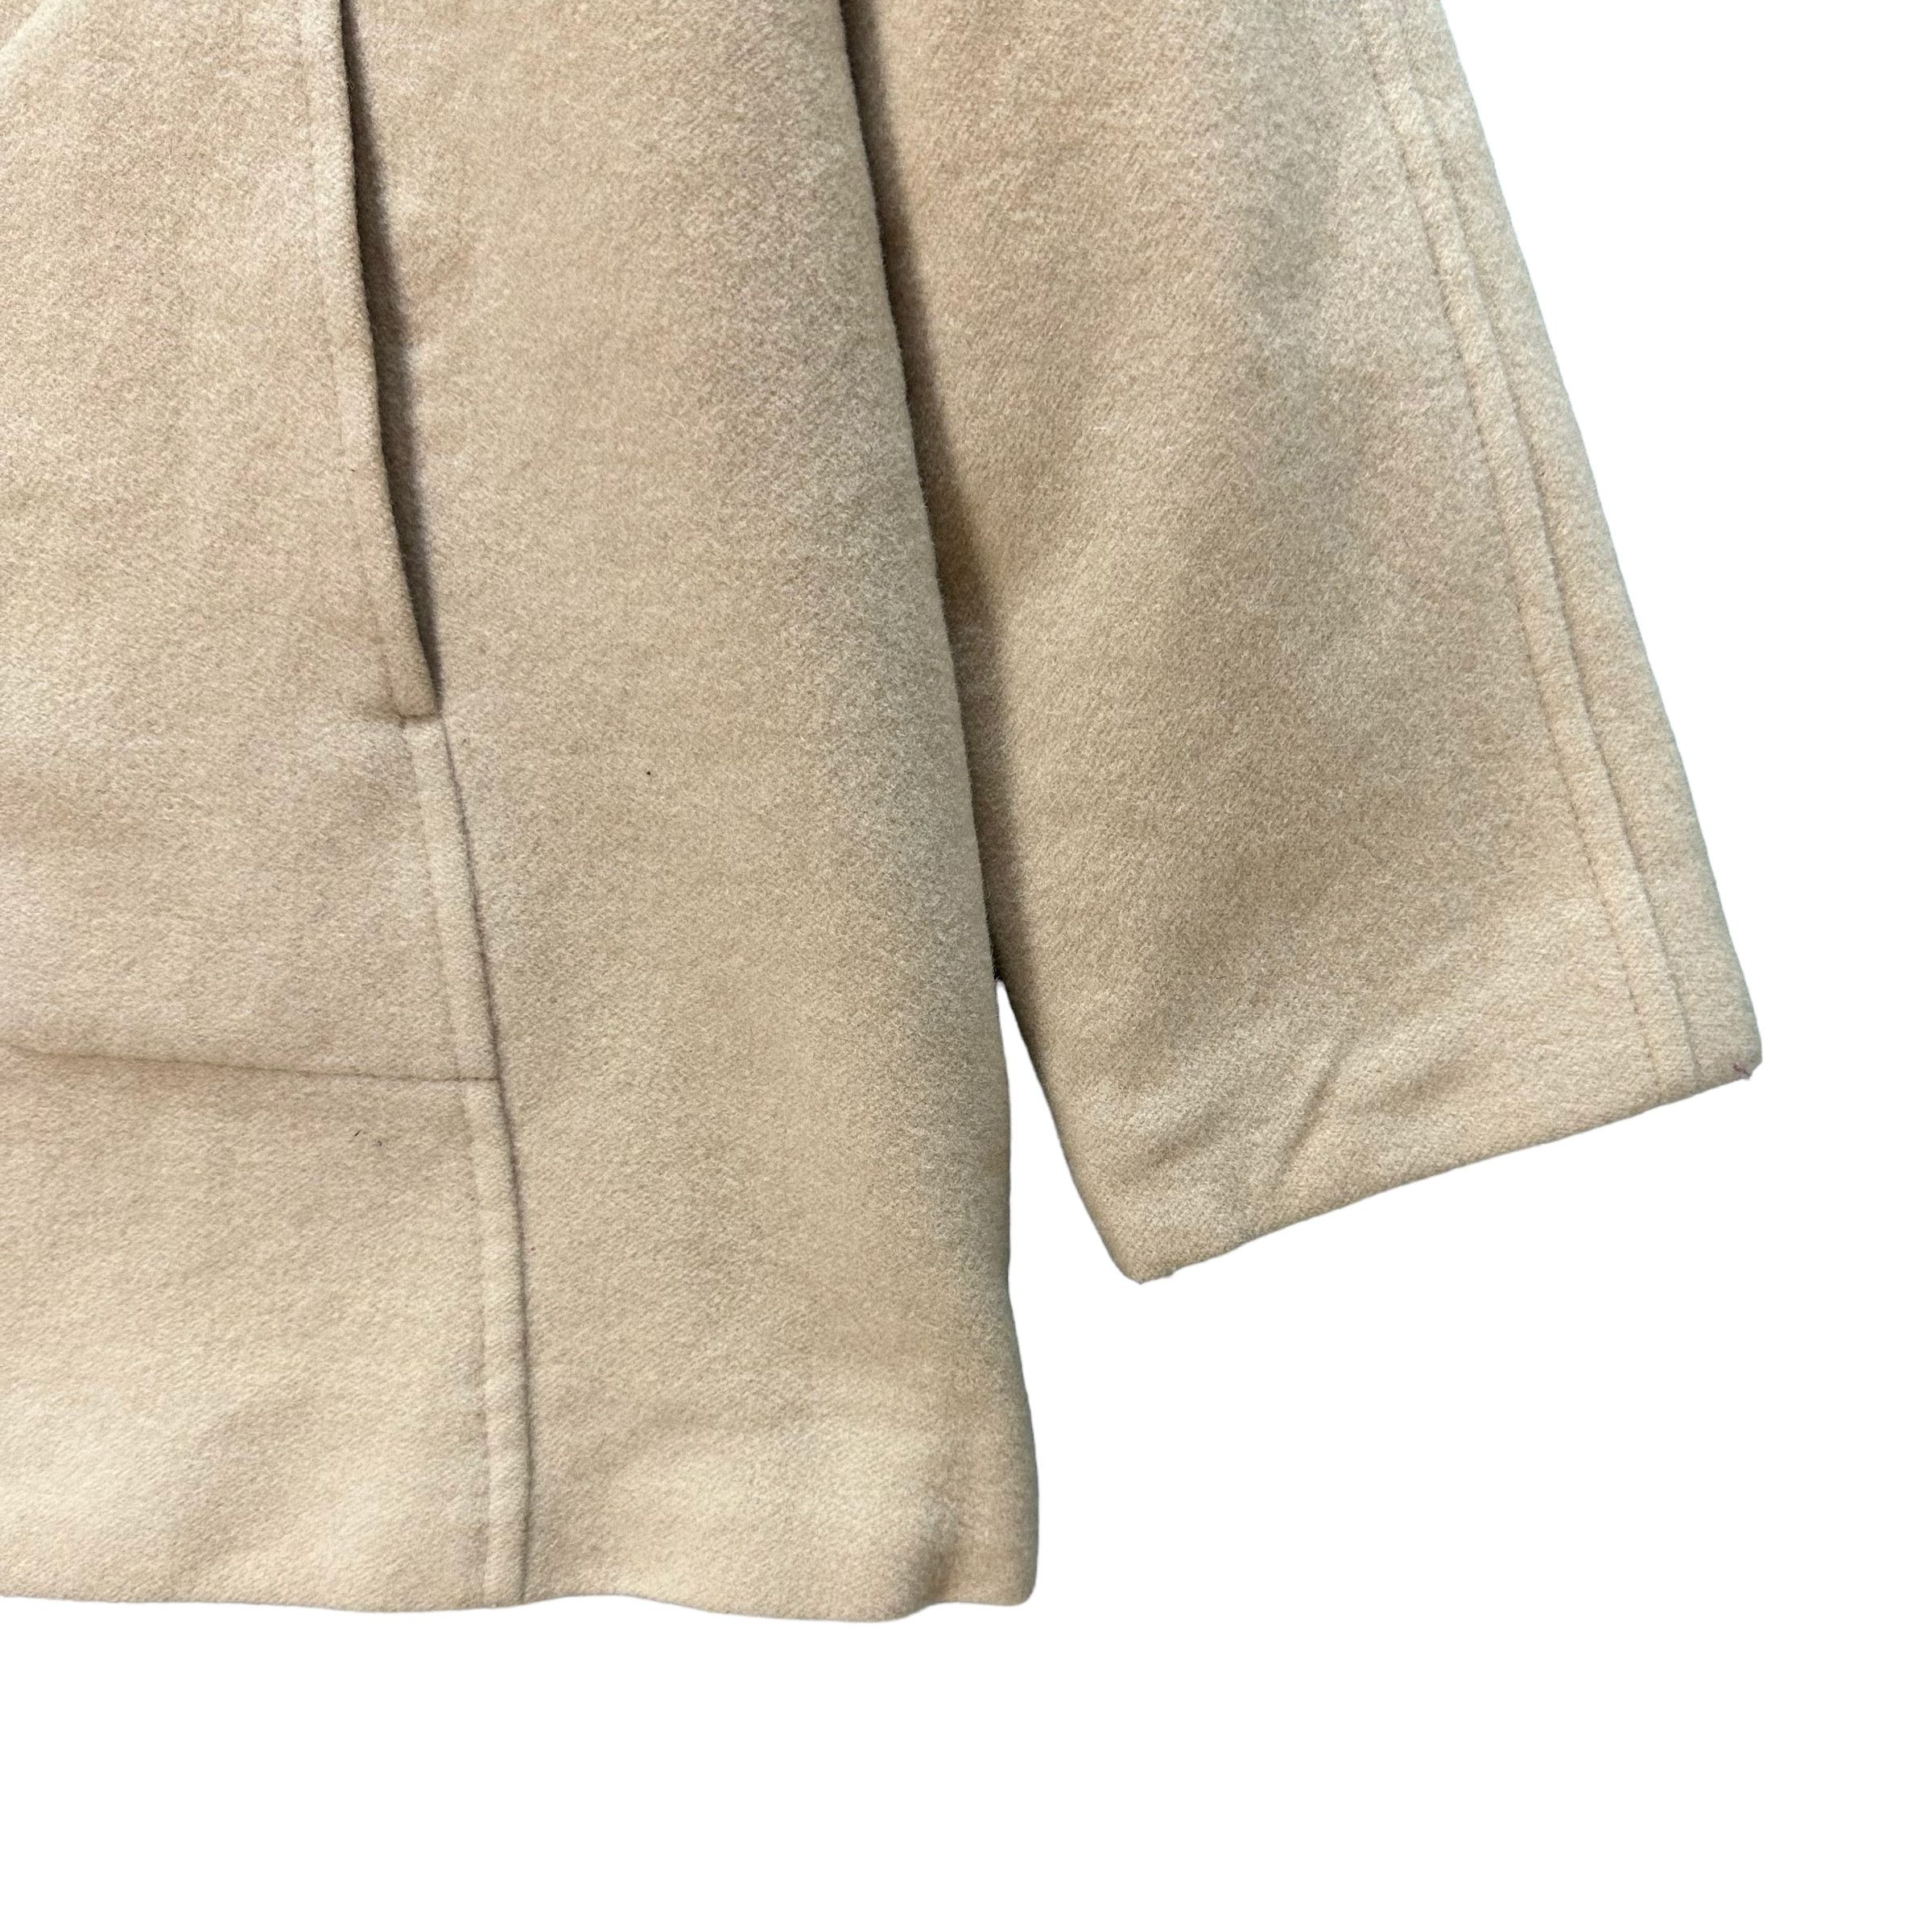 Vintage - Sonia Rykiel Wool Blend Coat Jacket #9117-58 - 6